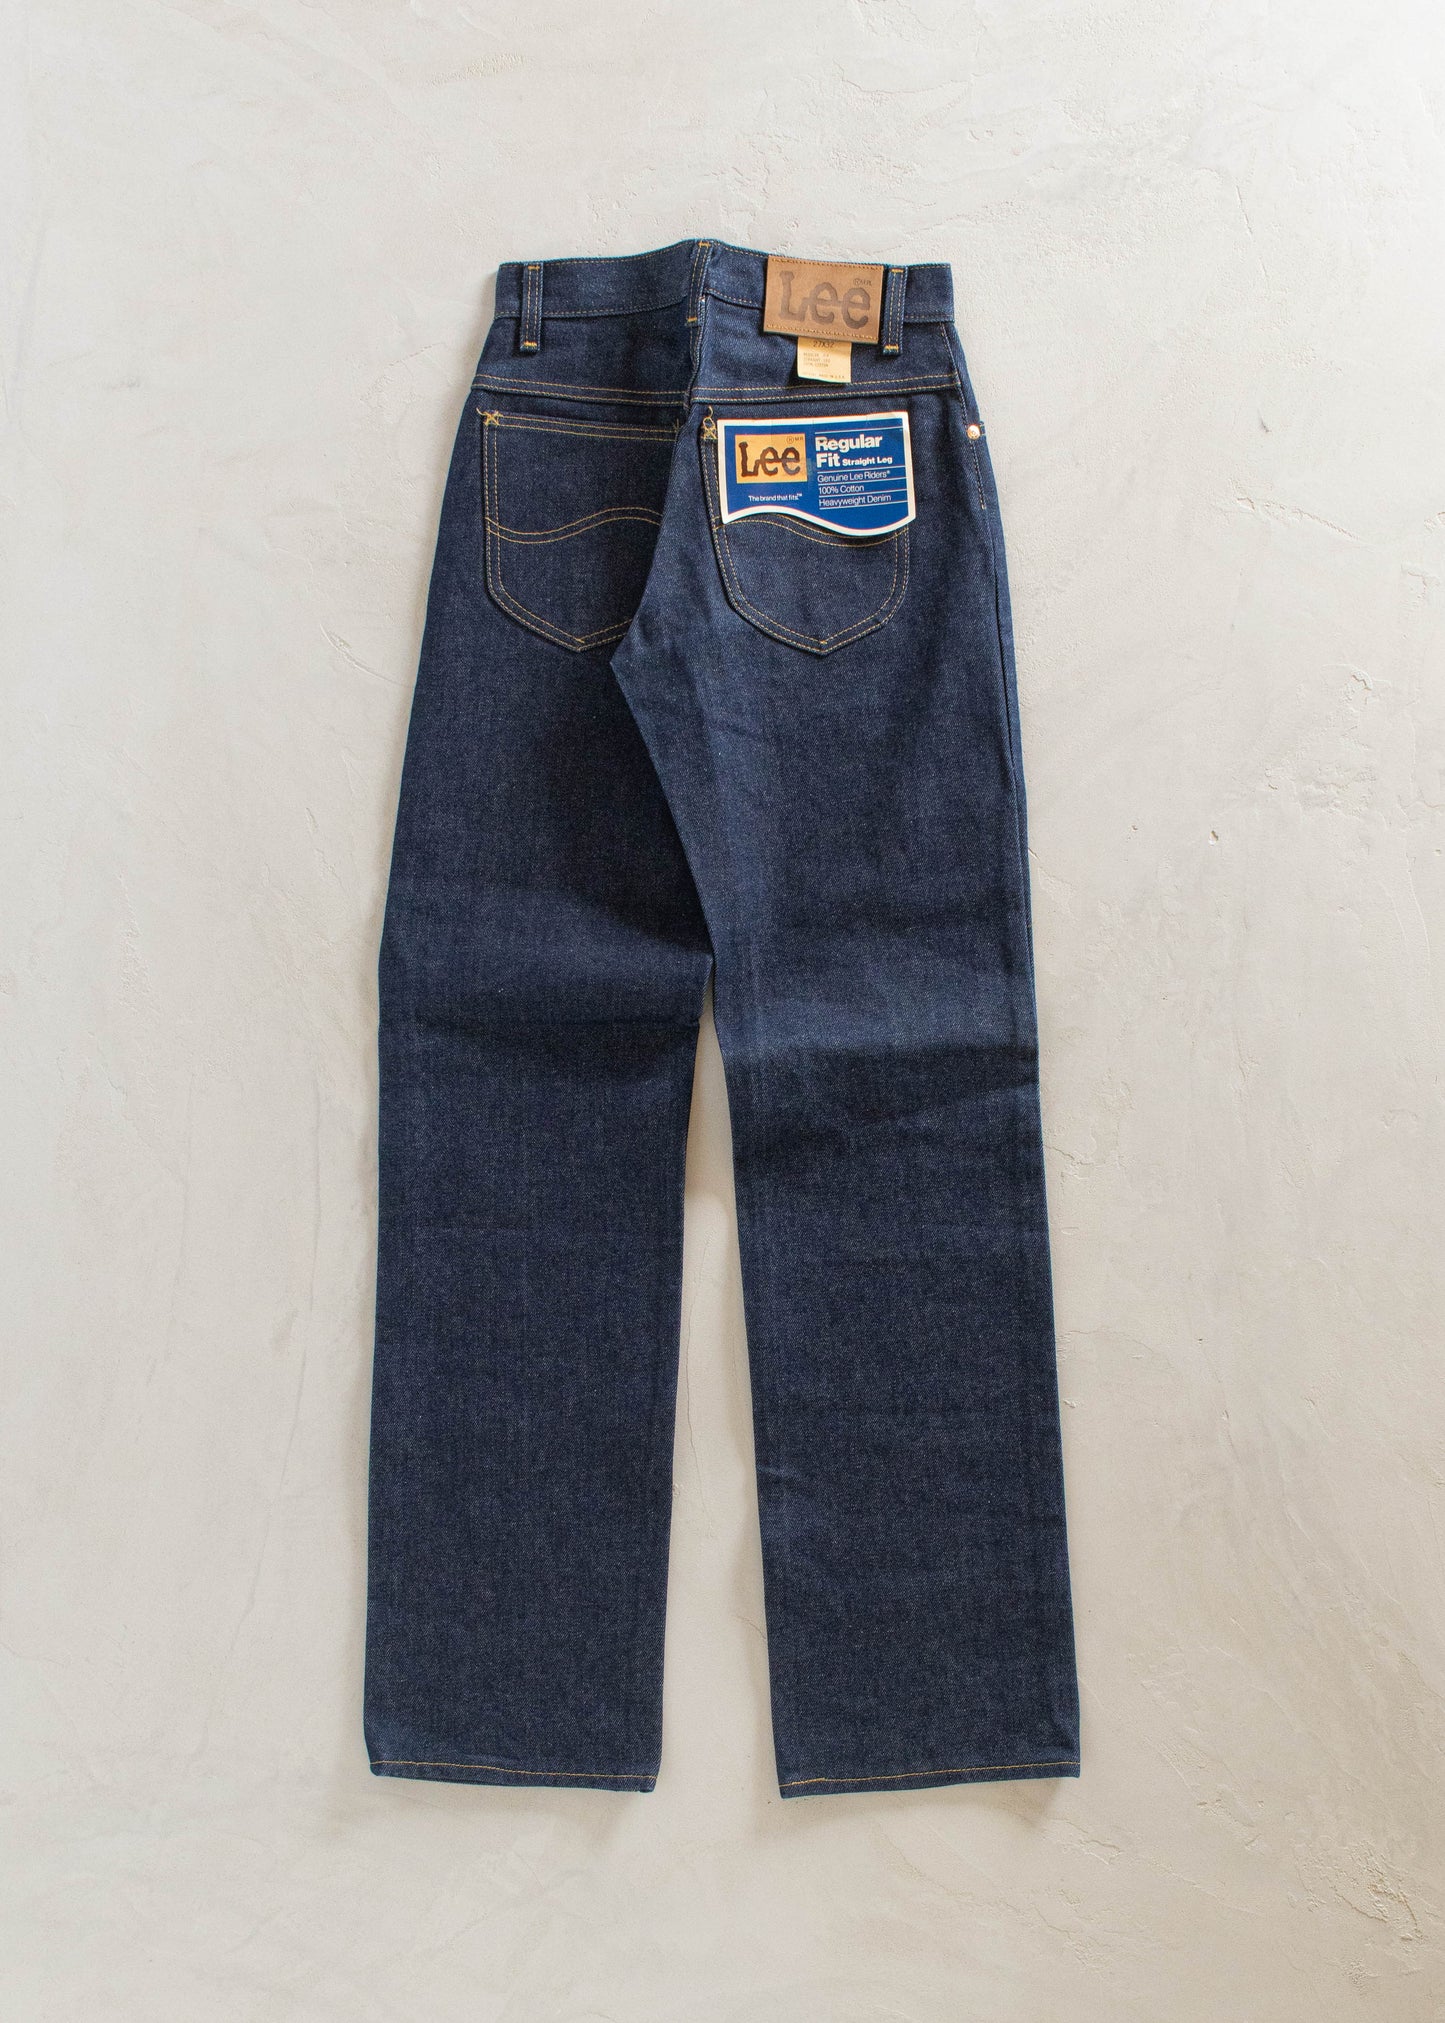 1970s Deadstock Lee Riders Dark Wash Straight Leg Jeans Size Women's 25 Men's 28